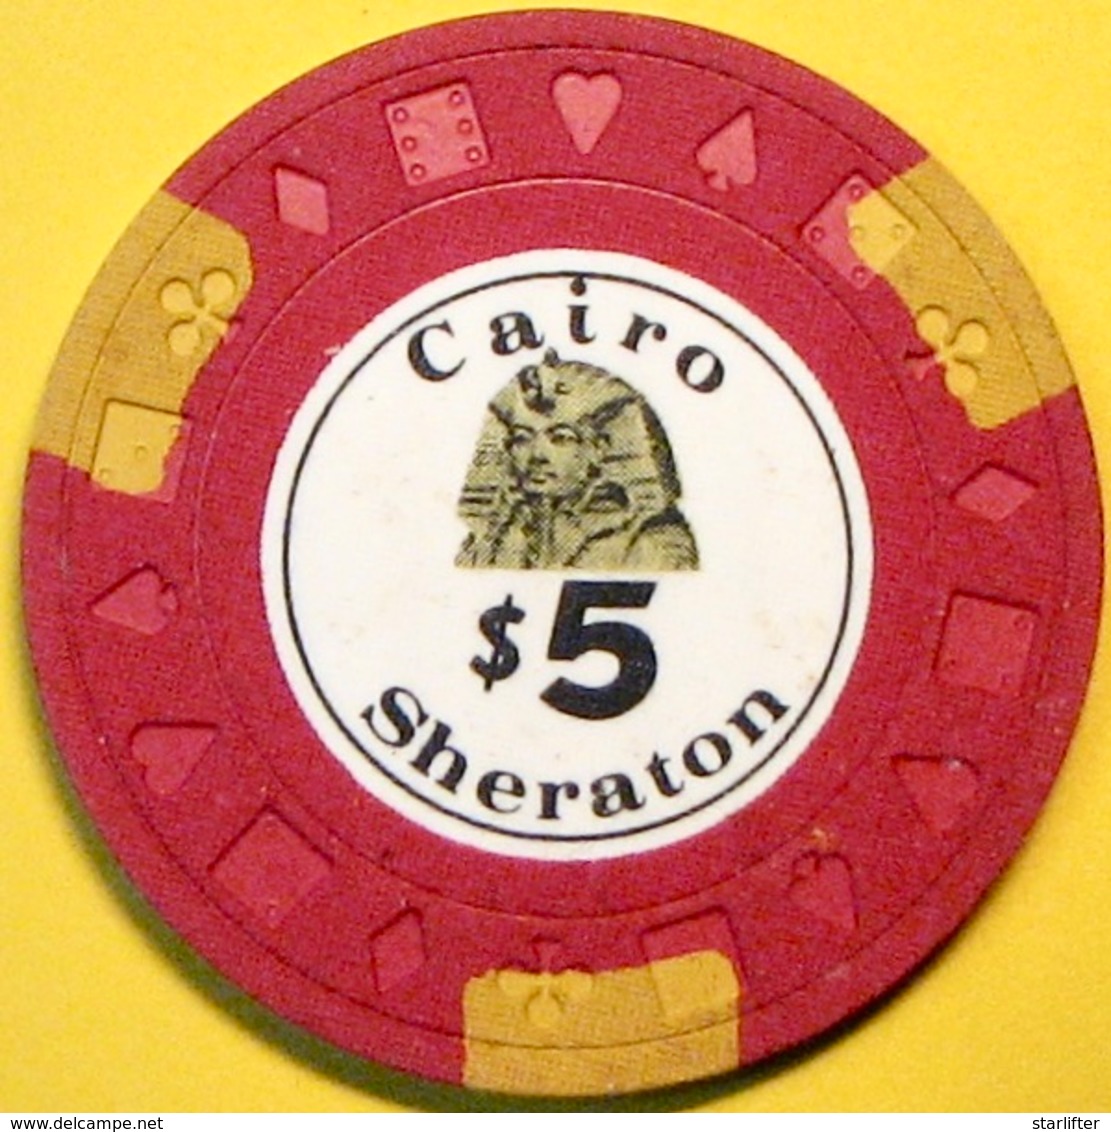 $5 Casino Chip. Cairo Sheraton, Cairo, Egypt. S20. - Casino